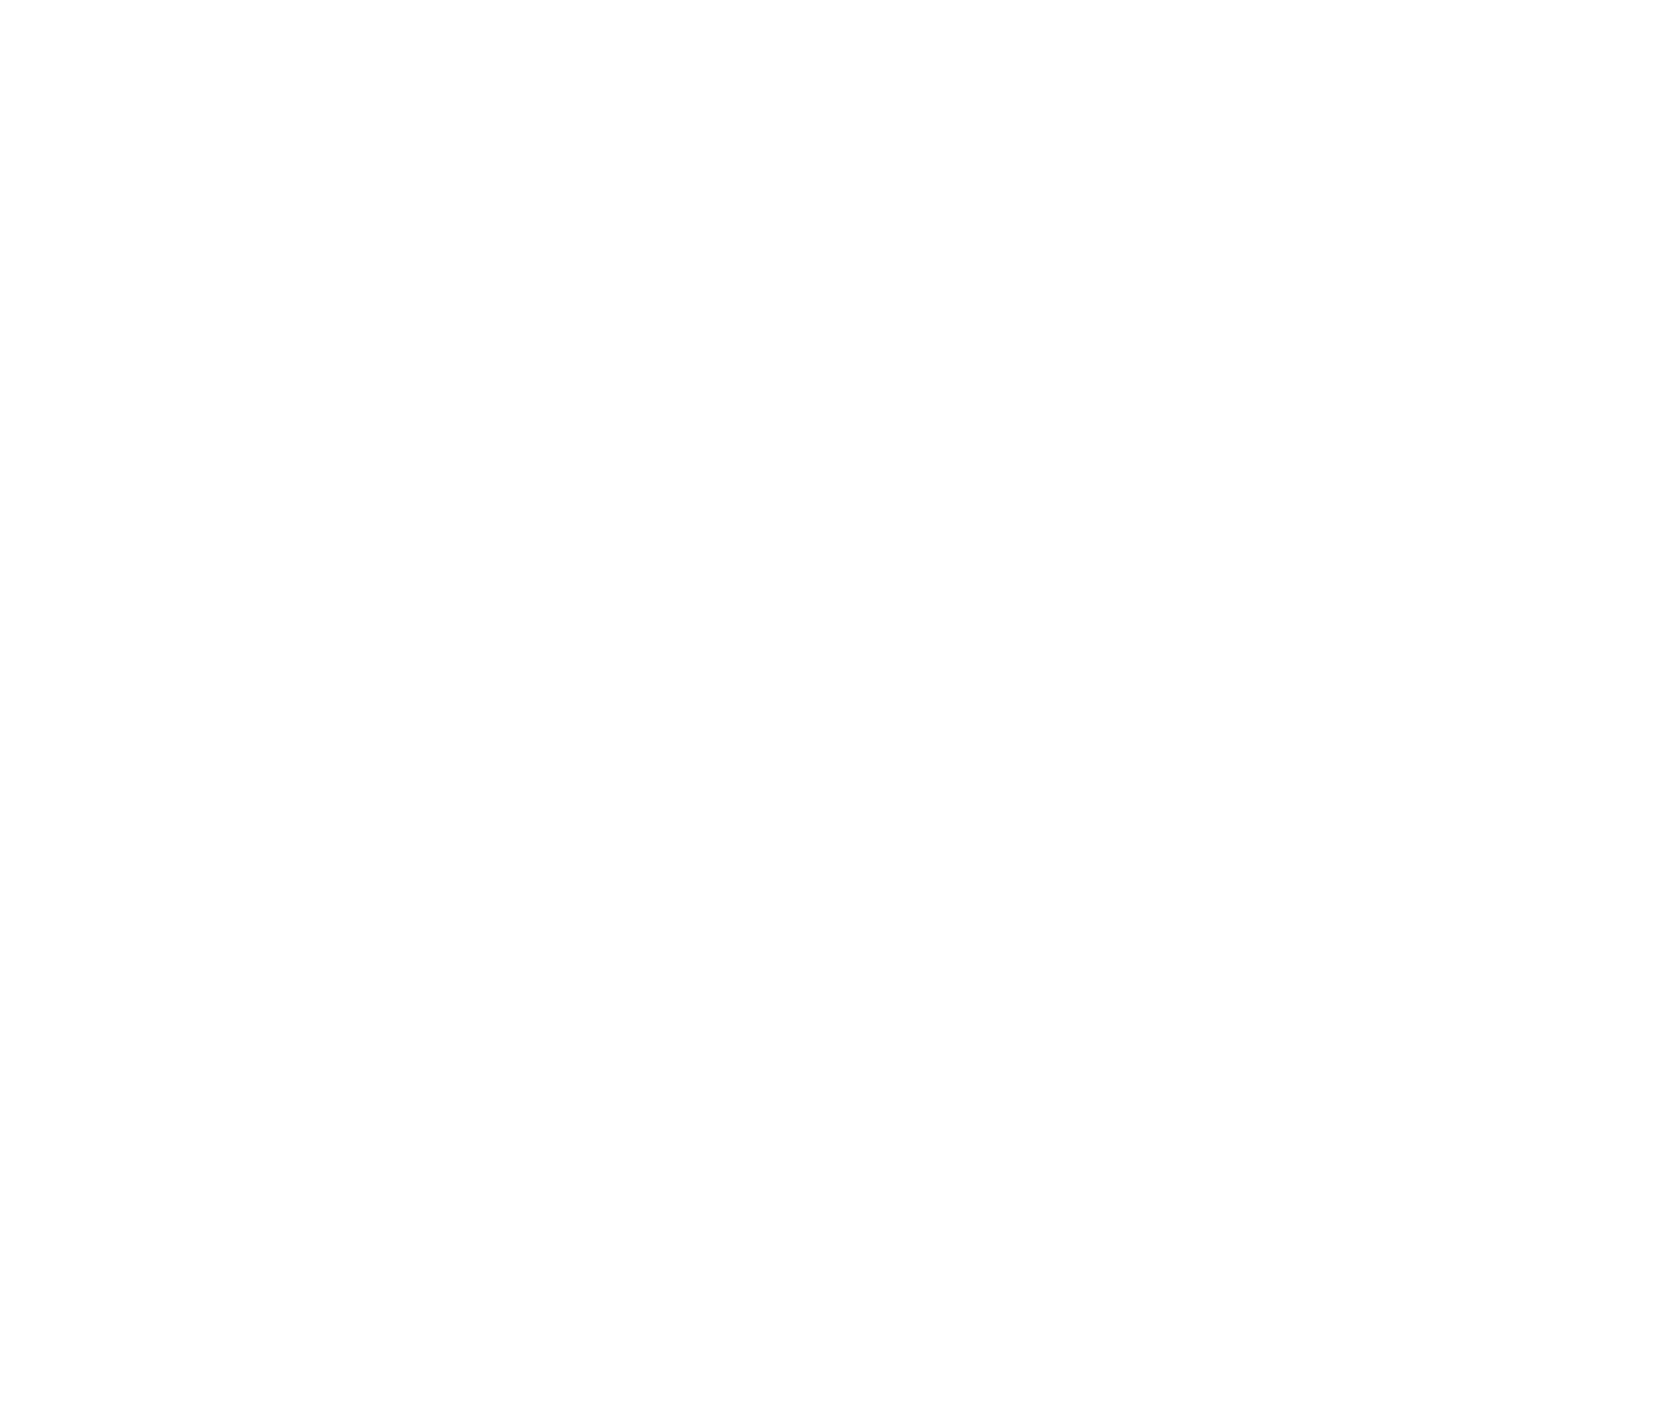 VTEX logo for dark backgrounds (transparent PNG)